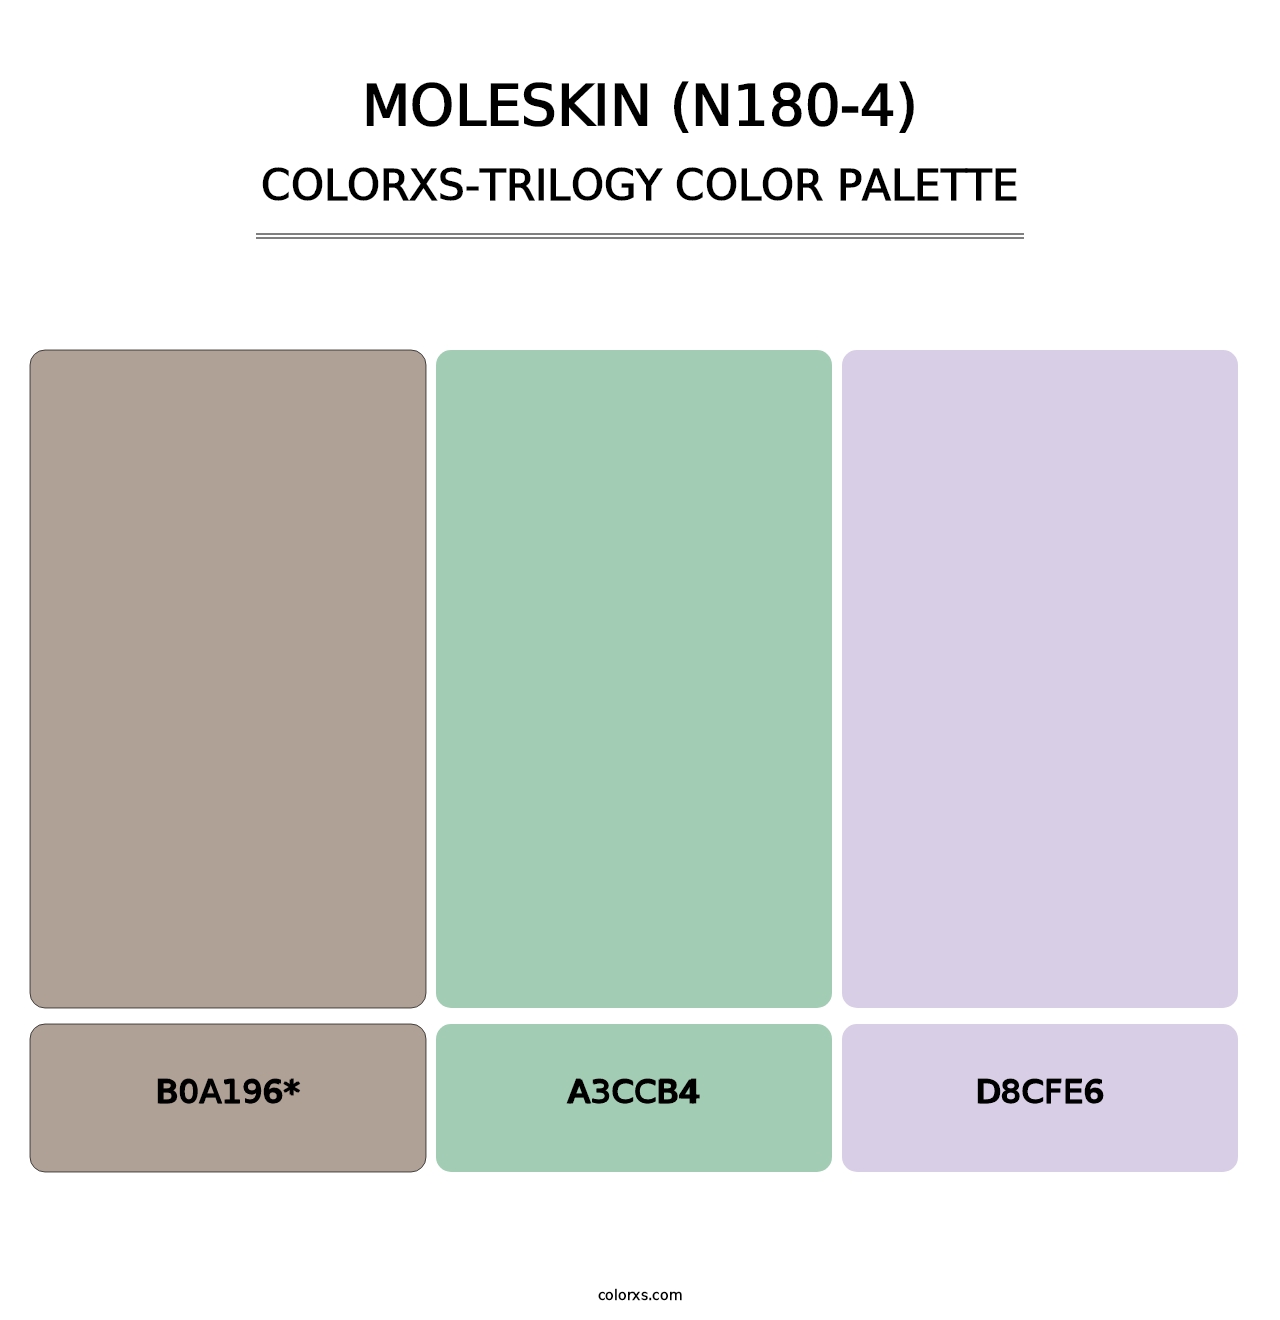 Moleskin (N180-4) - Colorxs Trilogy Palette